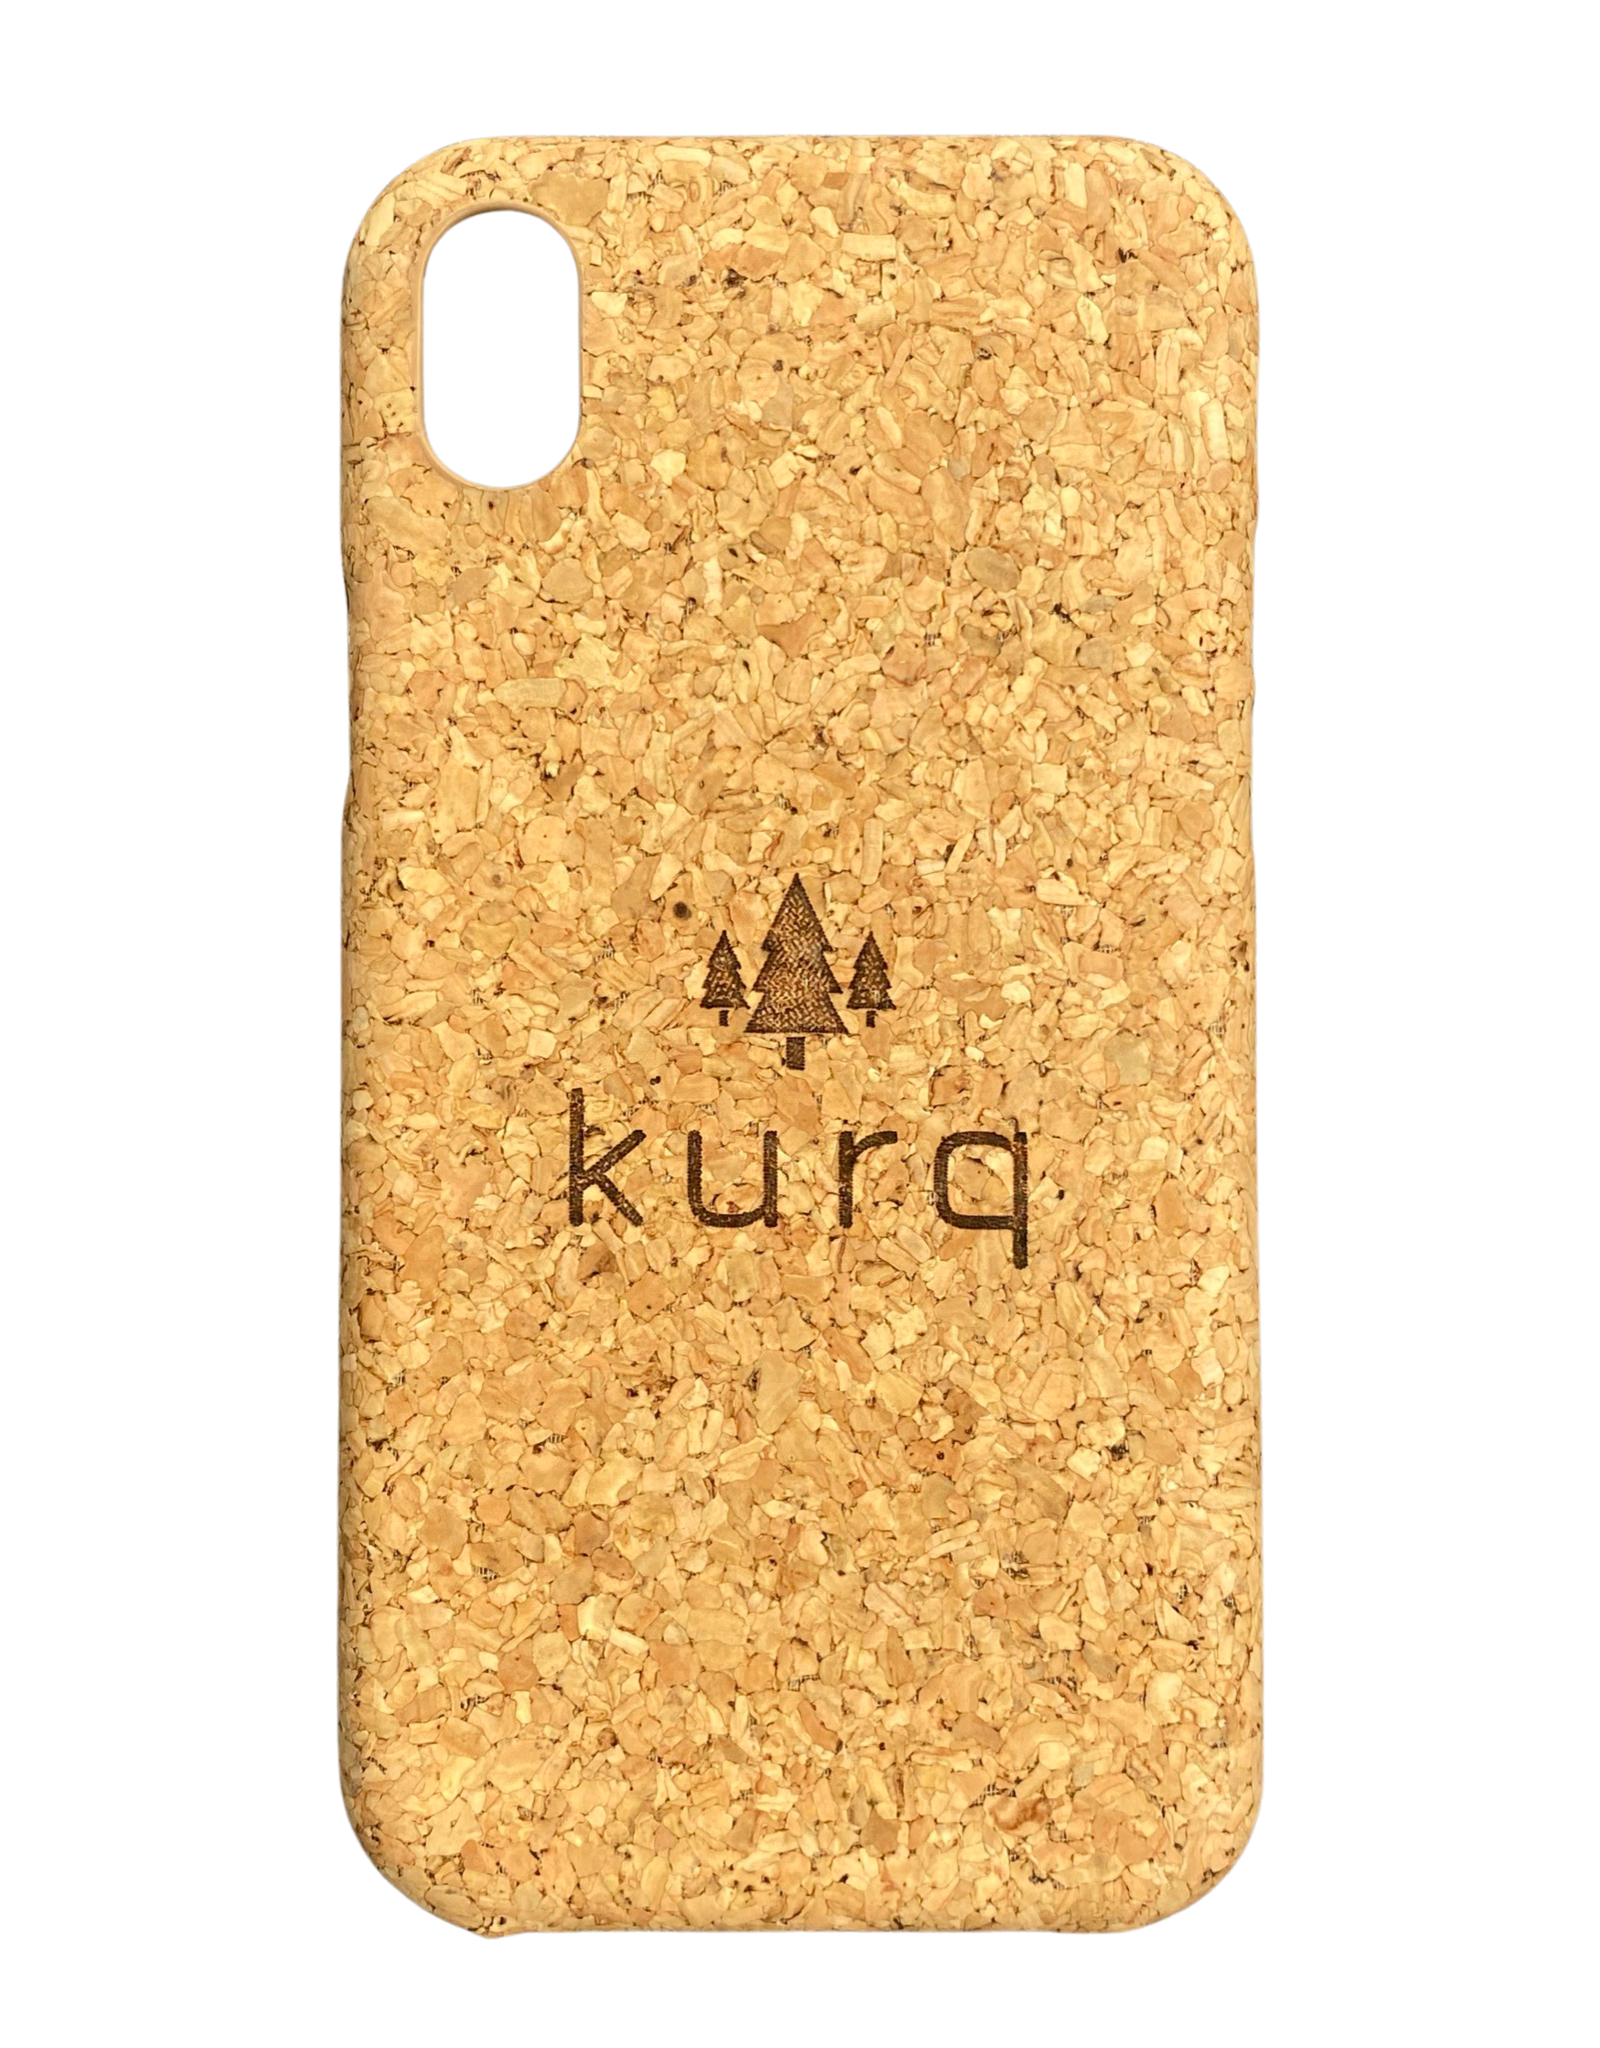 KURQ - Kurk telefoonhoesje voor iPhone X/XS